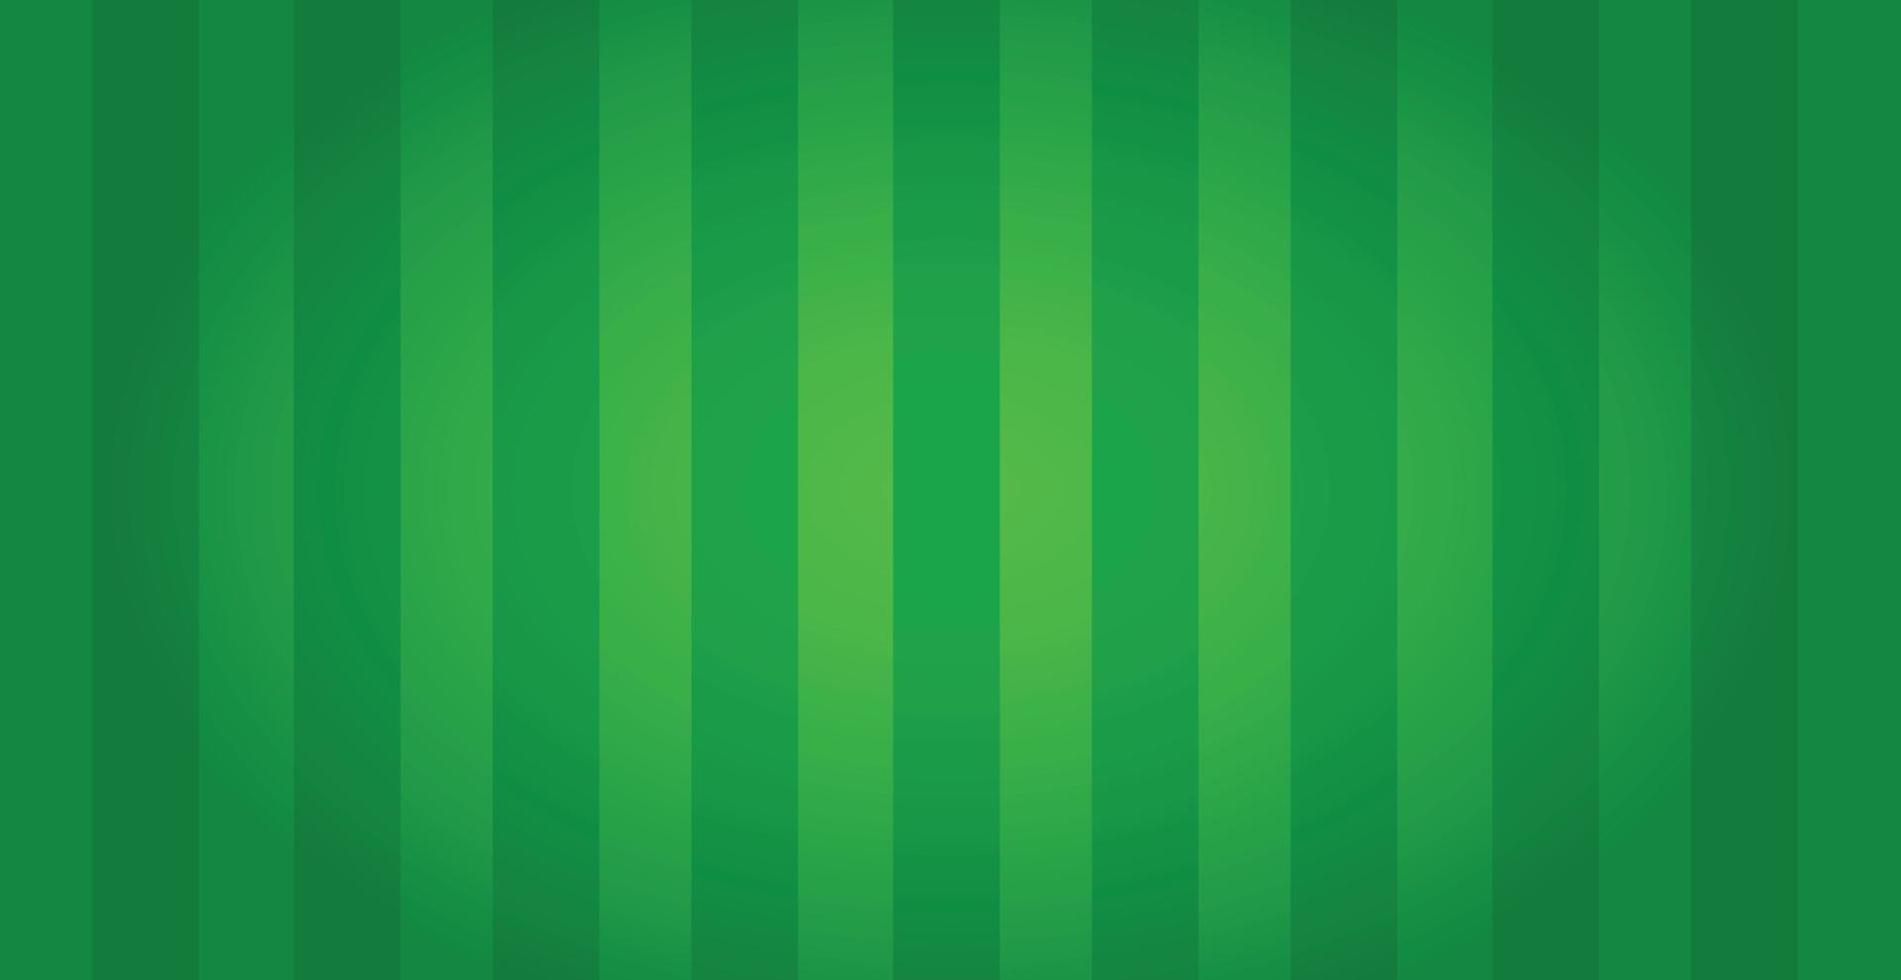 terrain de football vert réaliste avec des lignes verticales - vecteur